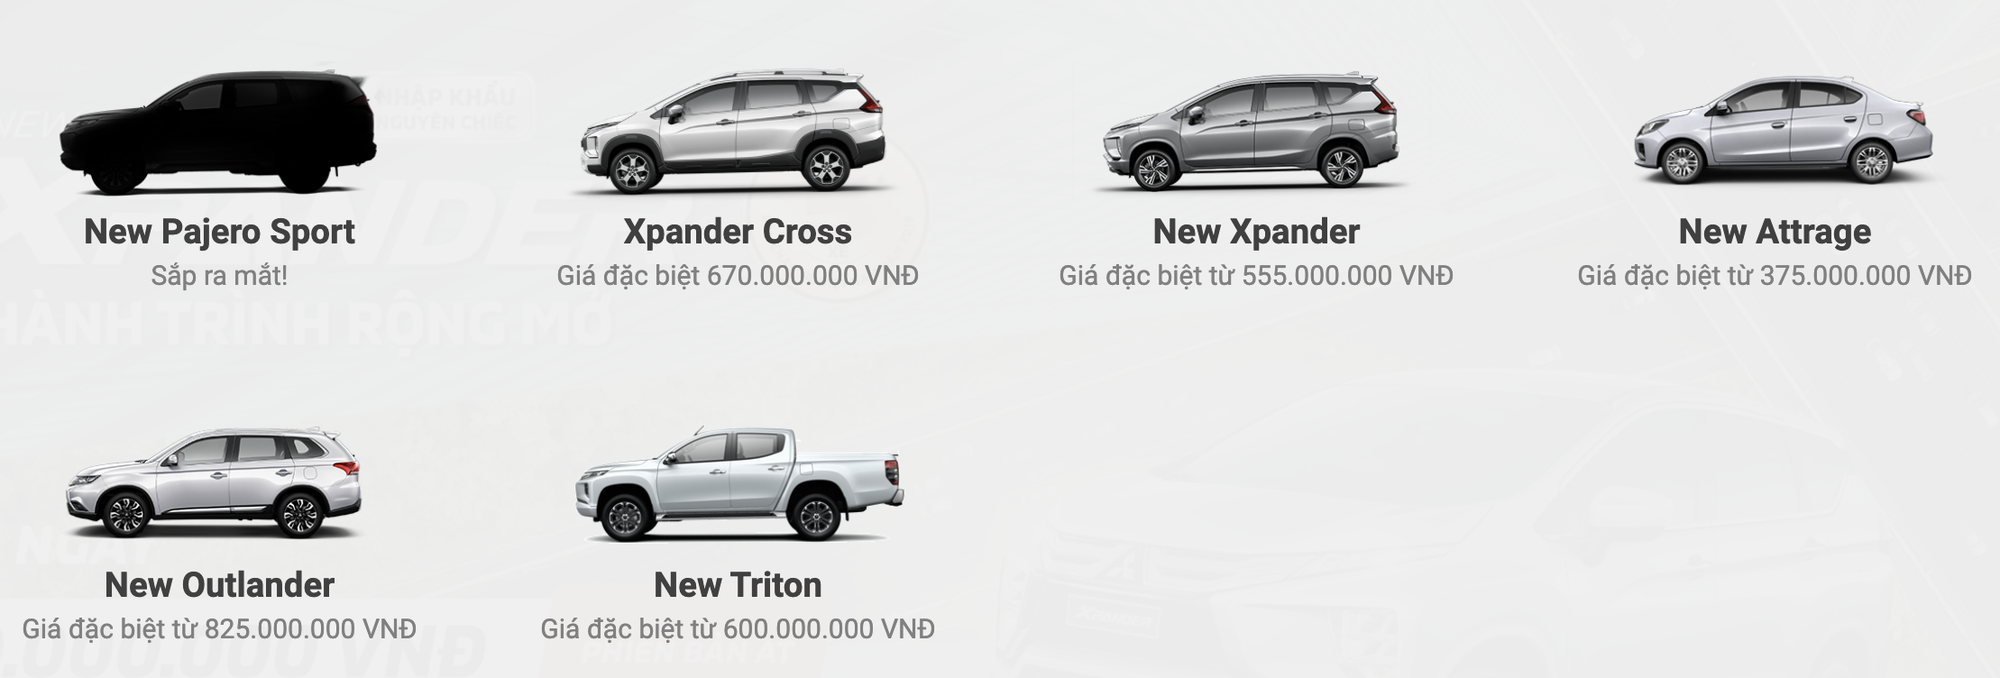 Tìm khách hộ, chủ xe Mitsubishi Xpander và Xpander Cross có thể bỏ túi 30 triệu đồng - Ảnh 3.